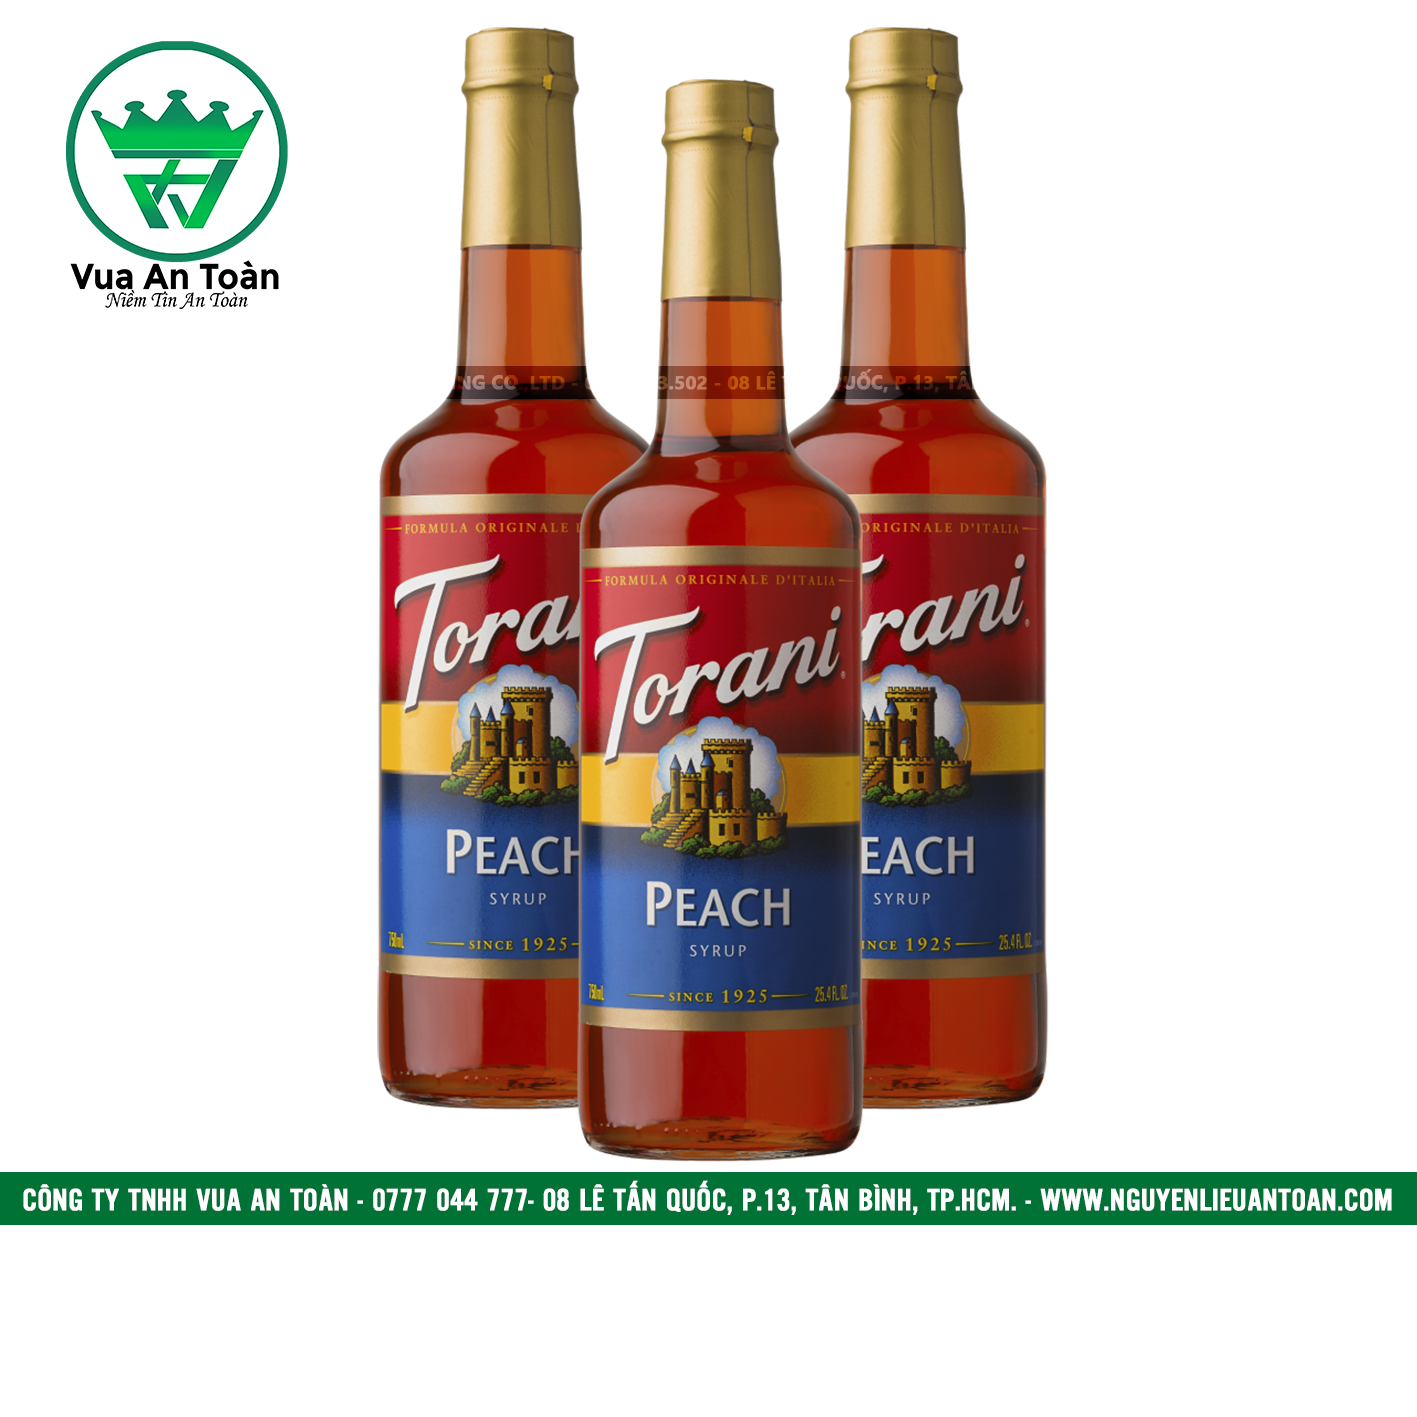 Torani Đào Đỏ - Peach (Red) Syrup